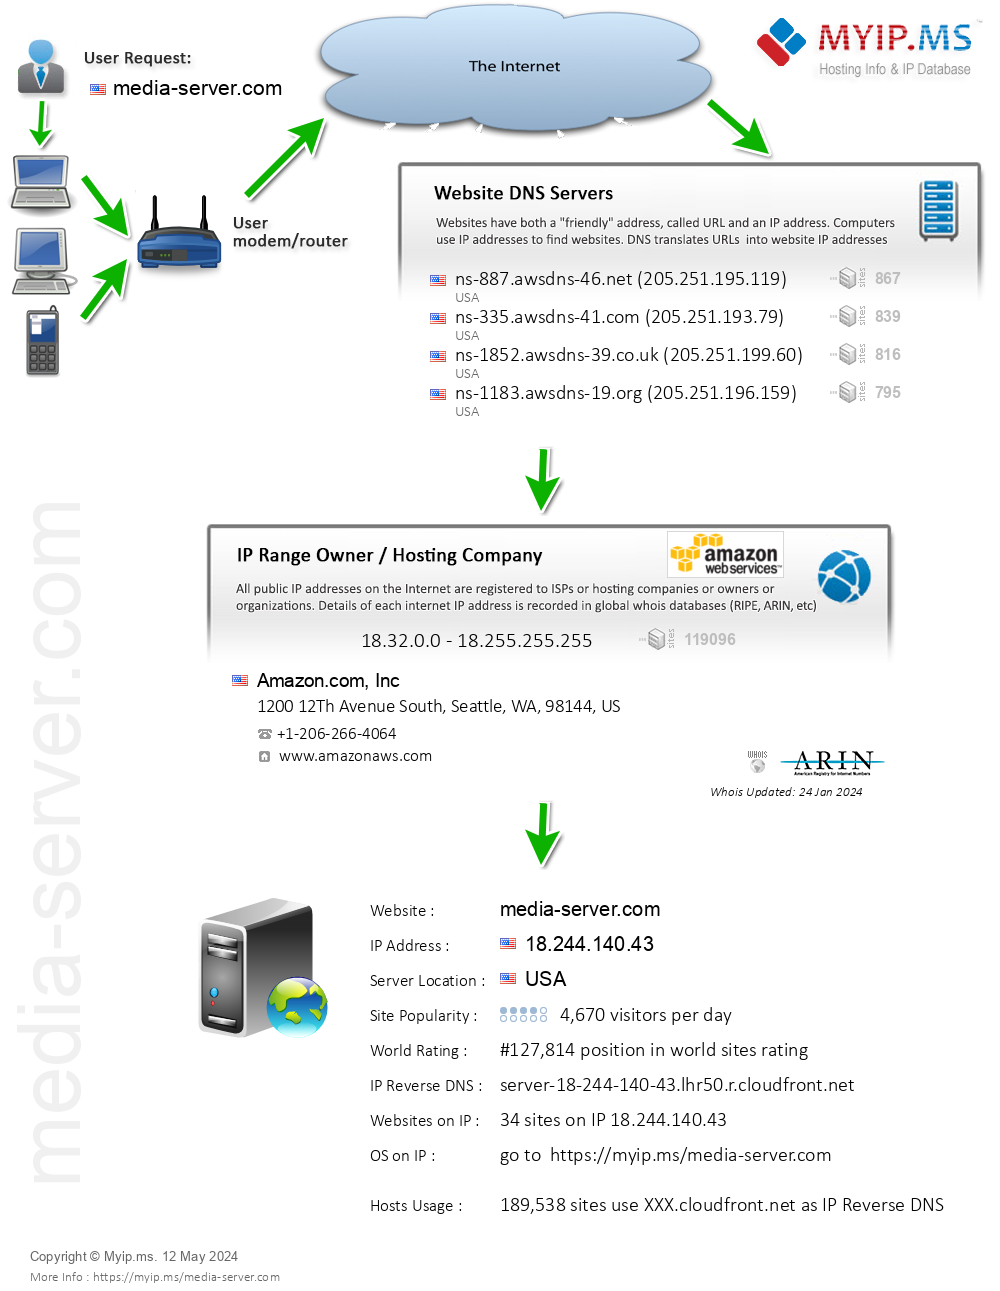 Media-server.com - Website Hosting Visual IP Diagram